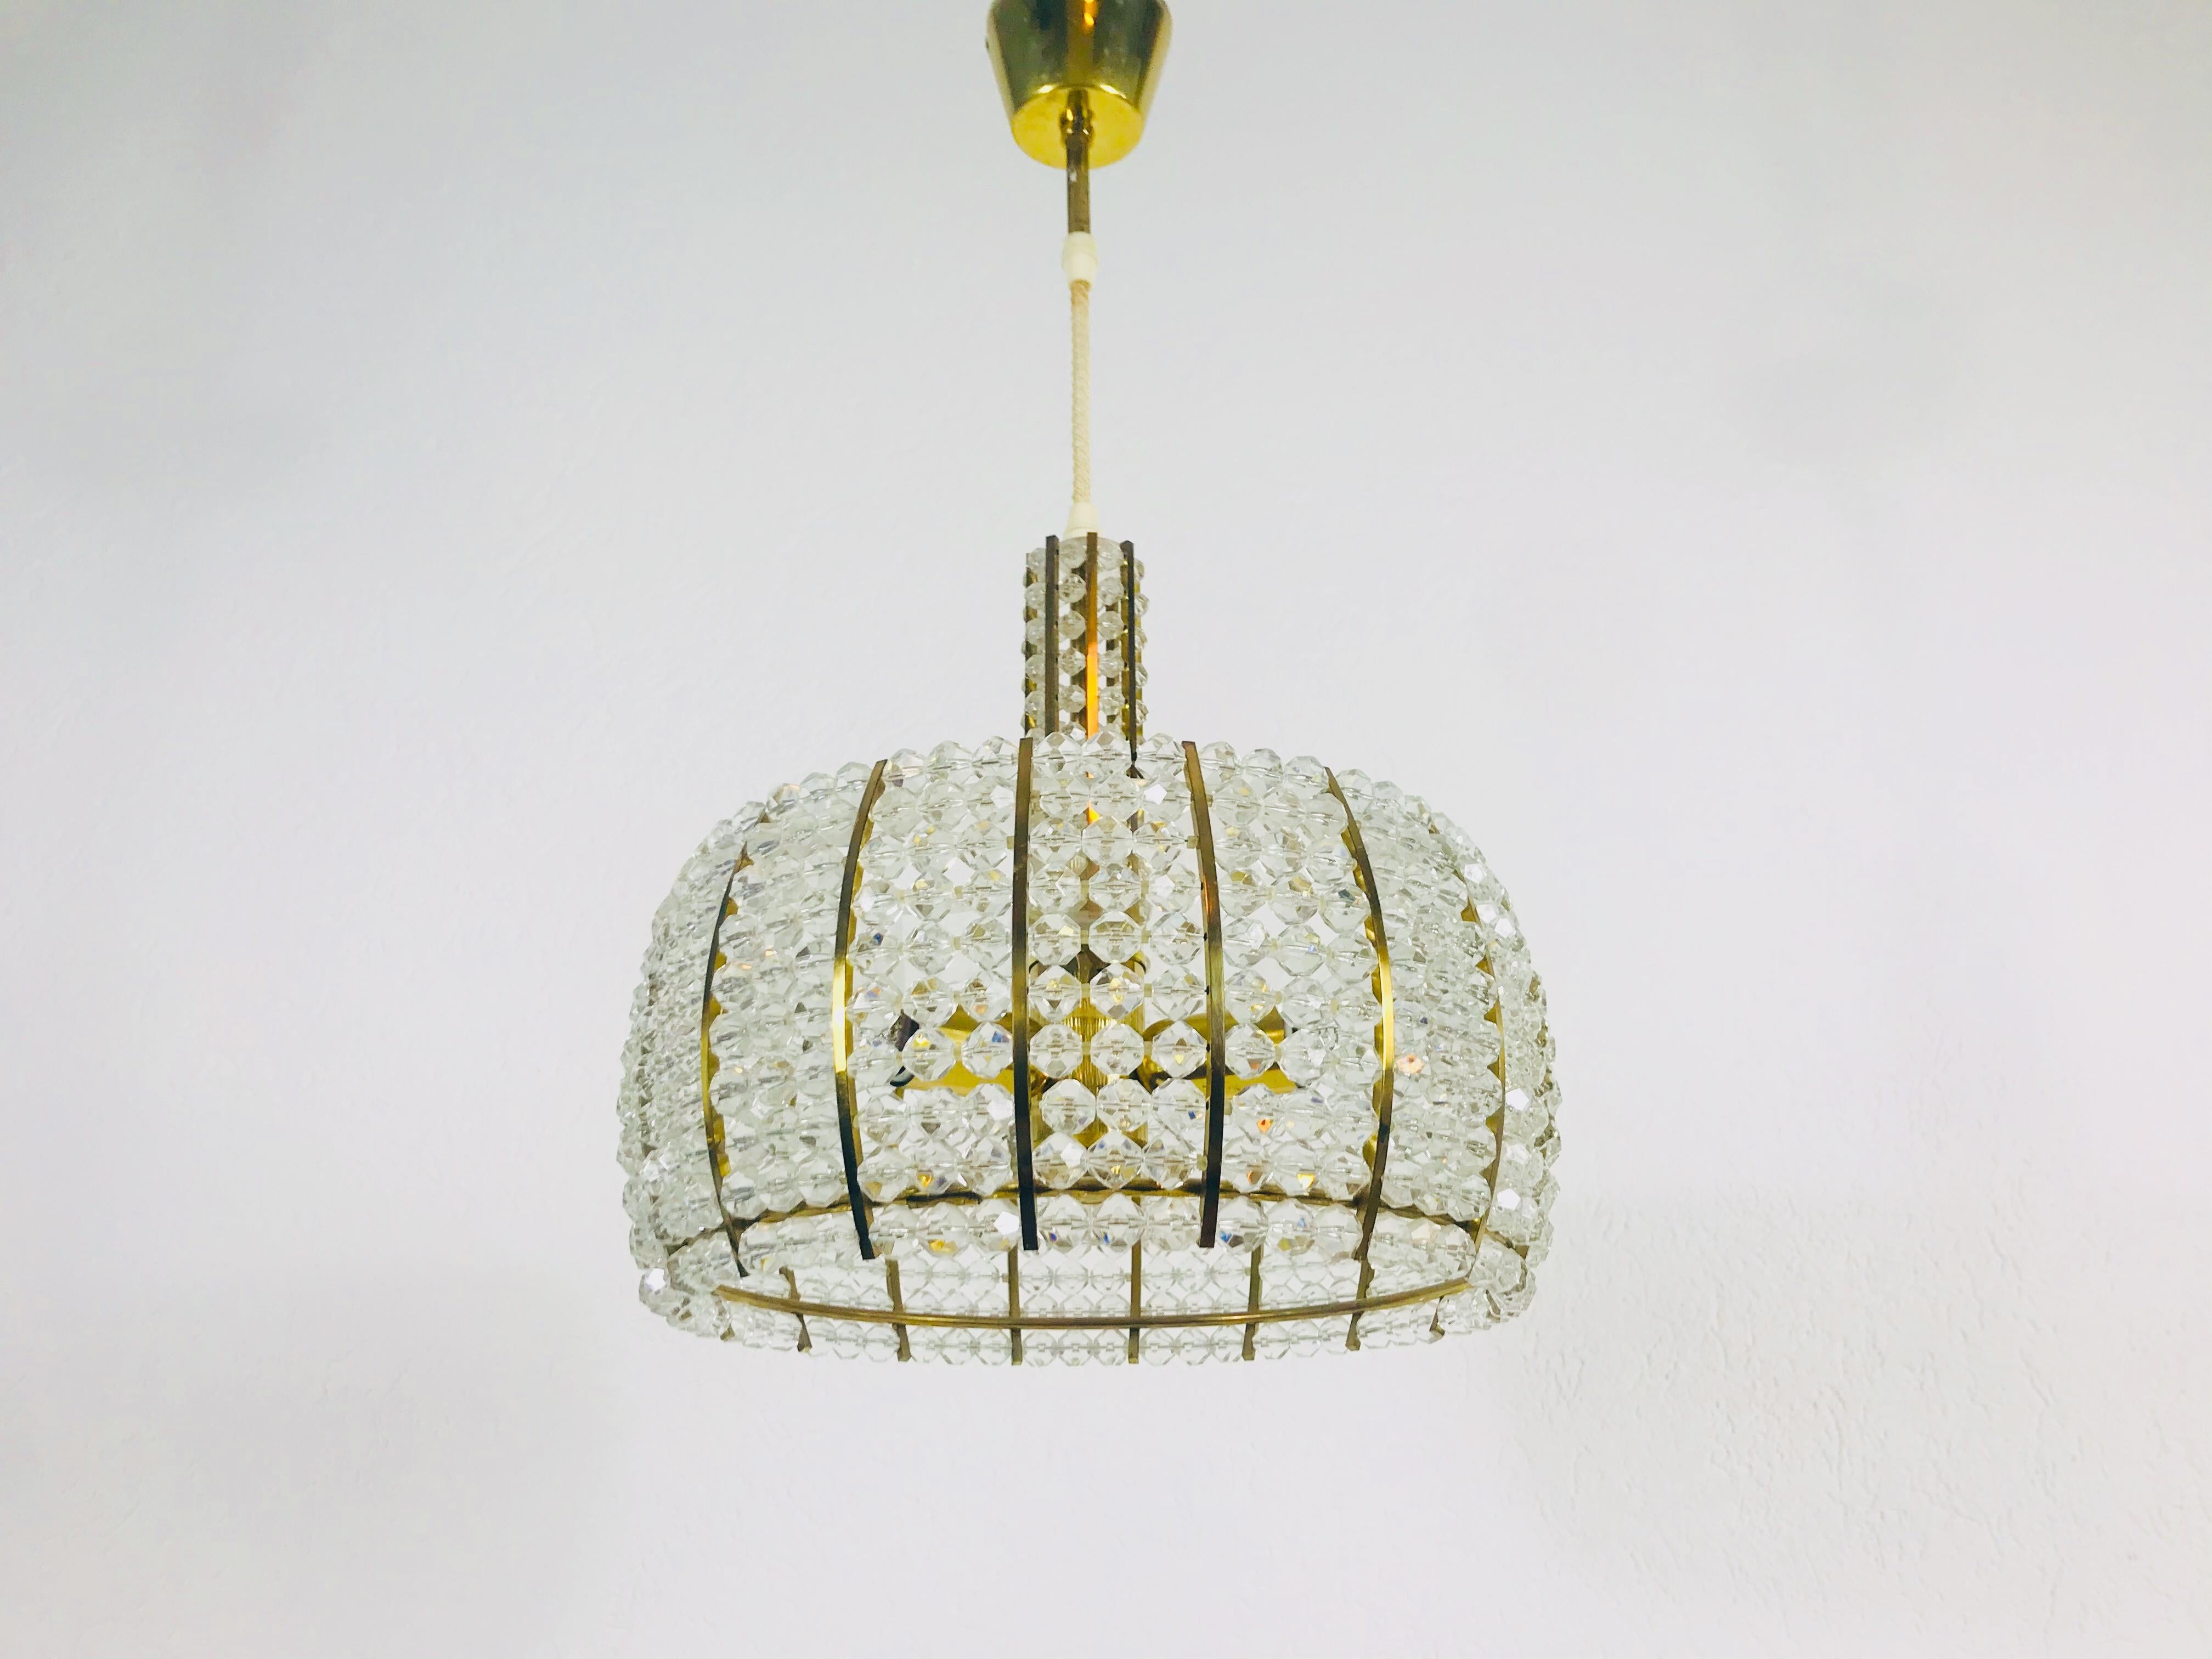 Ein Kronleuchter aus Messing, hergestellt von Emil Stejnar für Rupert Nikoll, Österreich, in den 1960er Jahren. Die Beleuchtung hat ein erstaunliches Midcentury-Design. Er ist aus Messing und kleinen Gläsern gefertigt und passt perfekt in ein